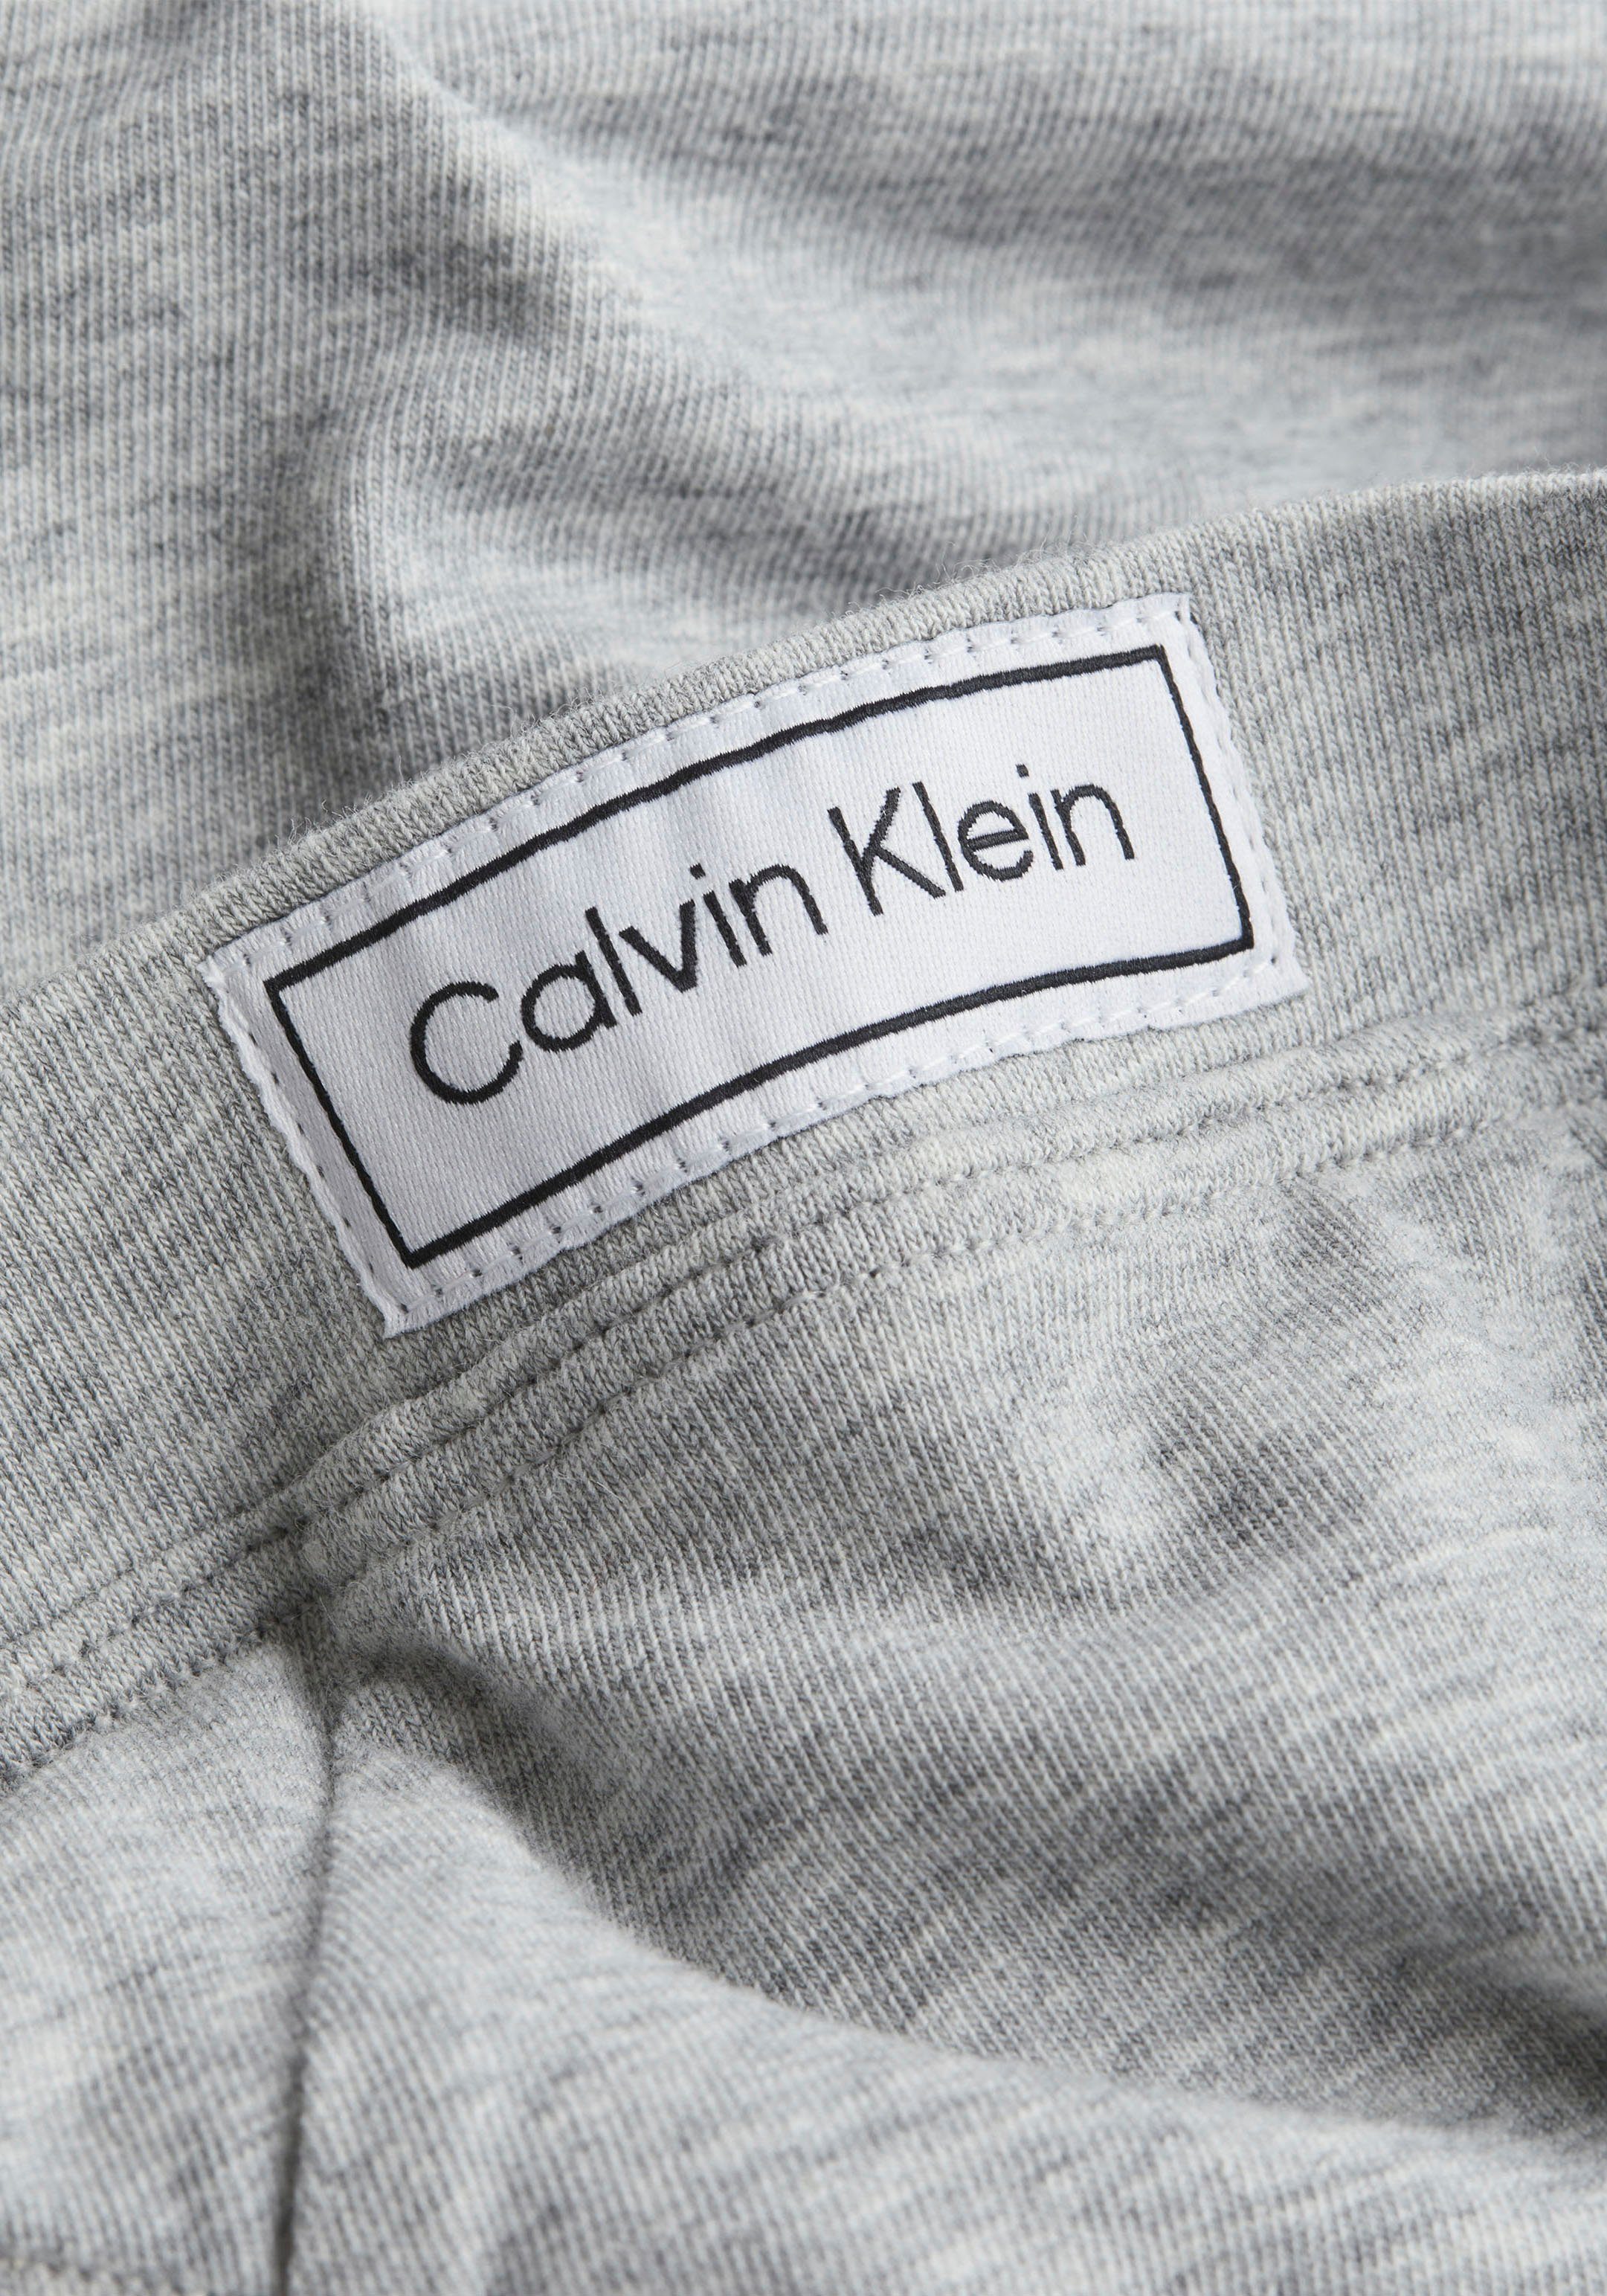 Calvin Klein Slip (Packung, Eingriff mit Underwear 2-St., 2er-Pack)